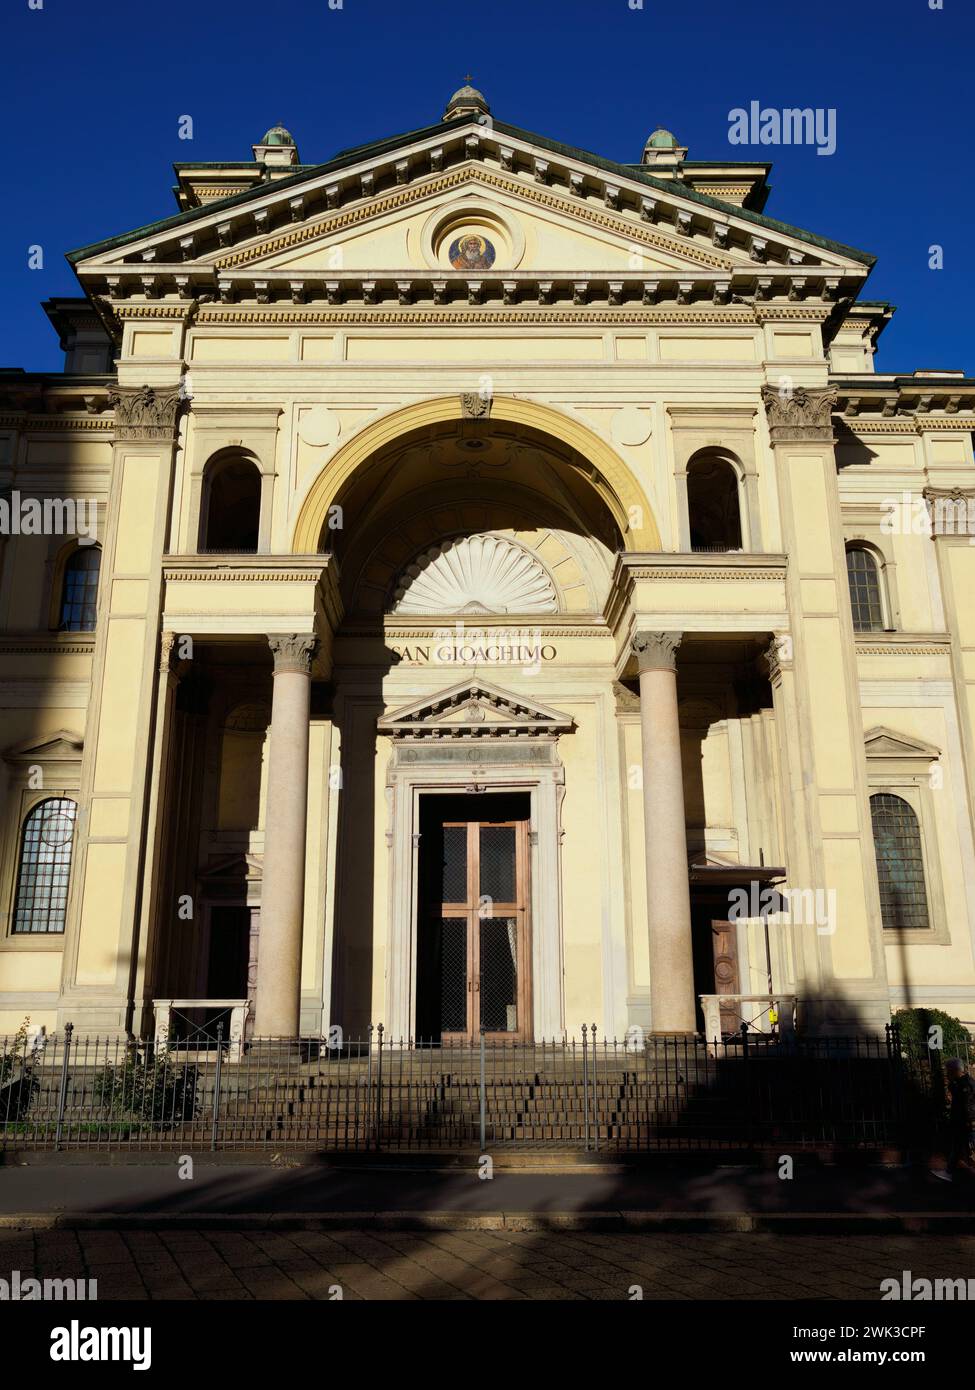 Façade de l'église San Gioachimo à Milan, Lombardie, Italie Banque D'Images